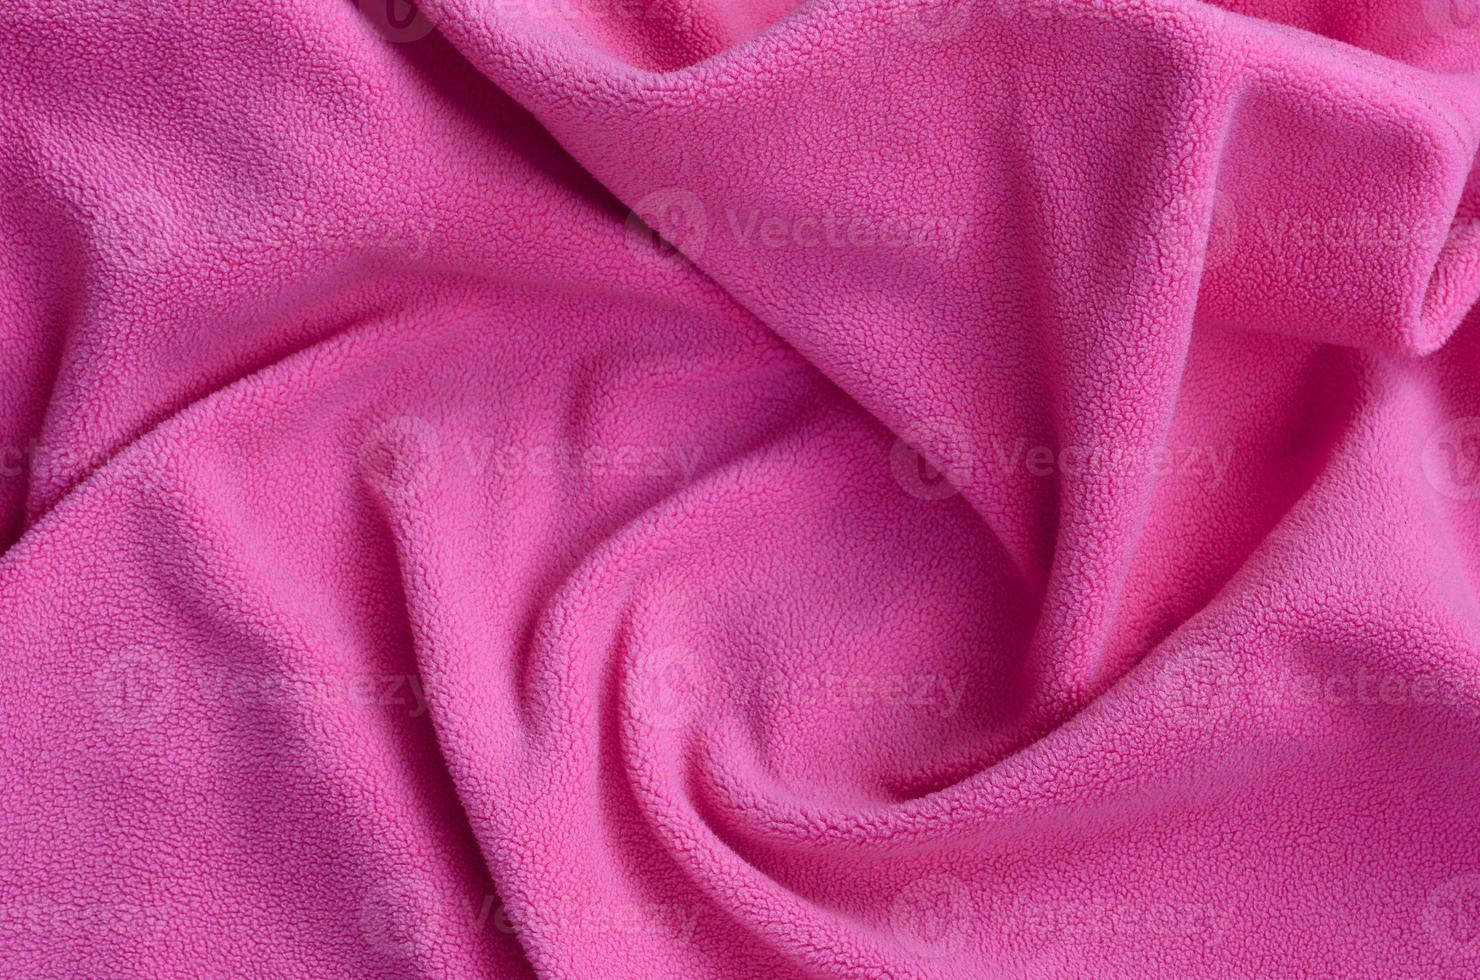 ontsnappen Persona risico de deken van harig roze fleece kleding stof. een achtergrond van licht roze  zacht pluche fleece materiaal met een veel van Verlichting vouwen 12583386  stockfoto bij Vecteezy